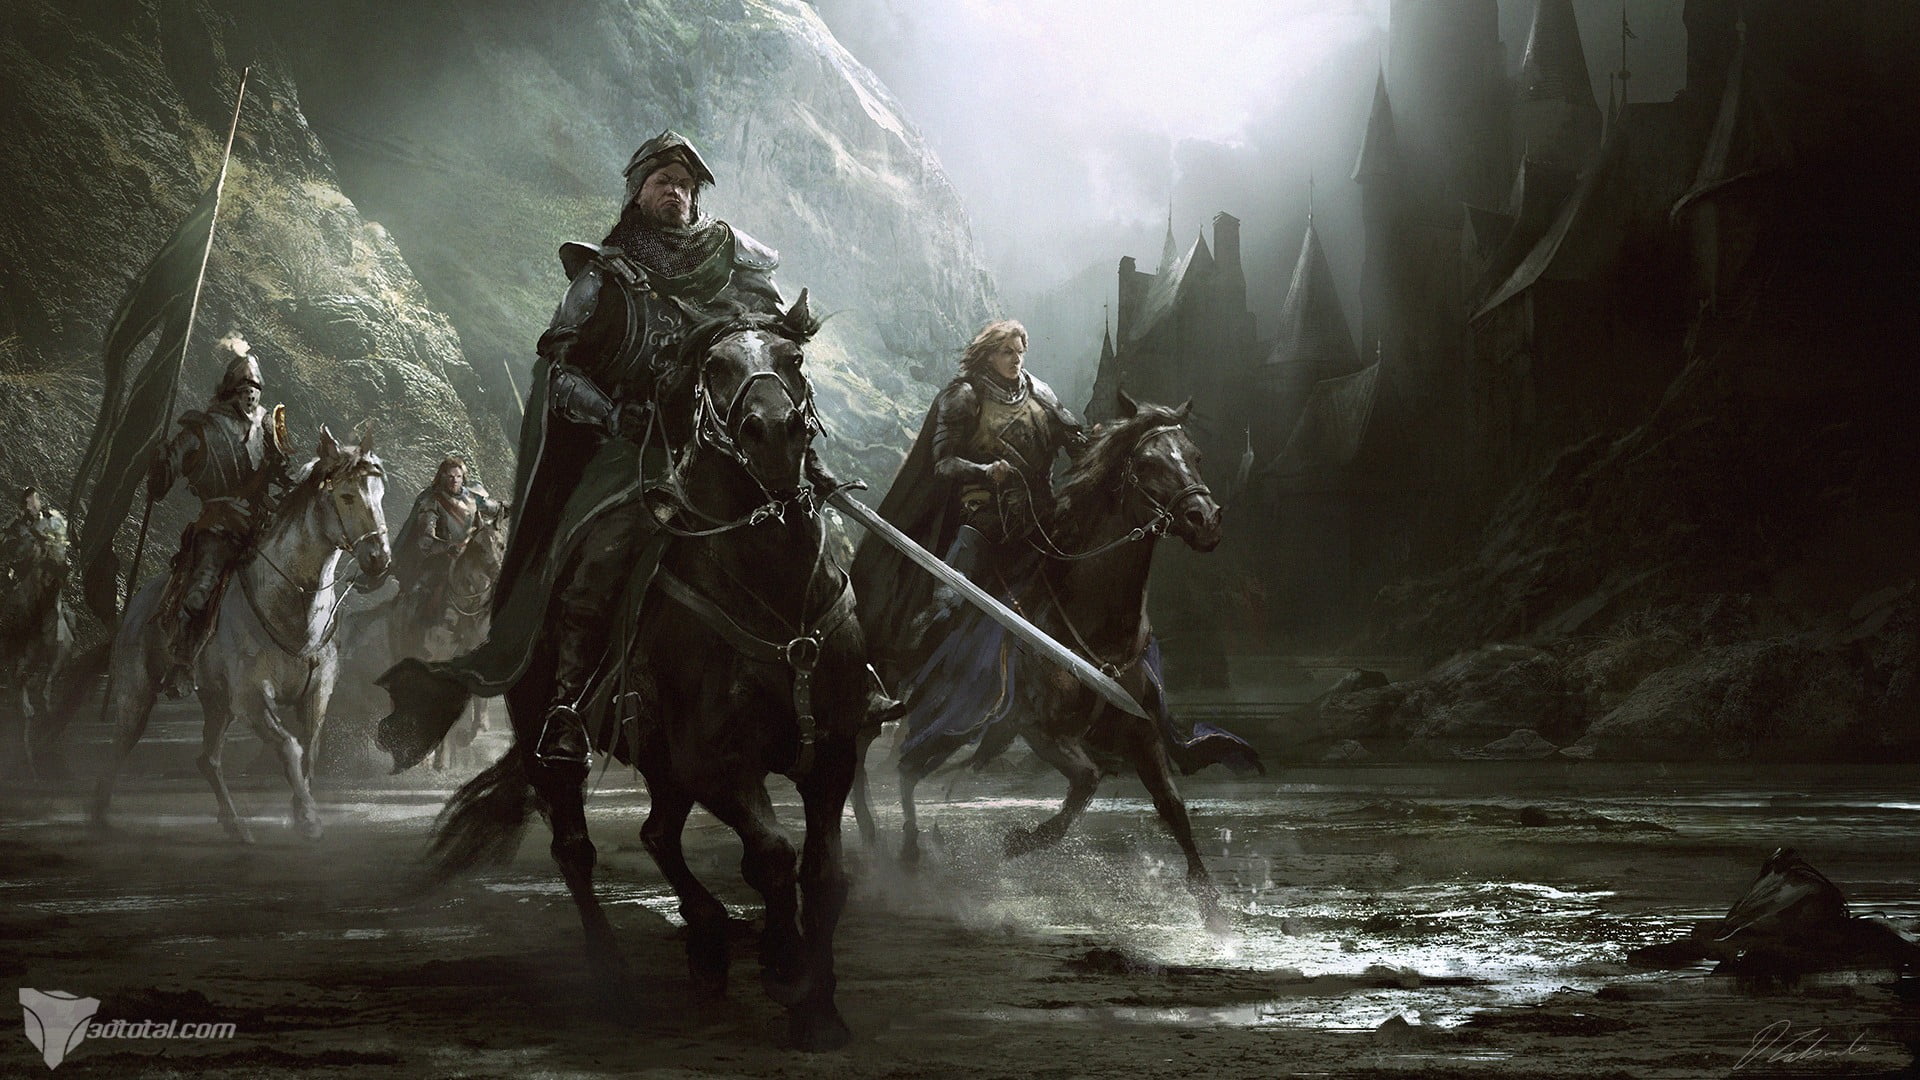 Knight riding on black horse wallpaper, artwork, fantasy art, horse